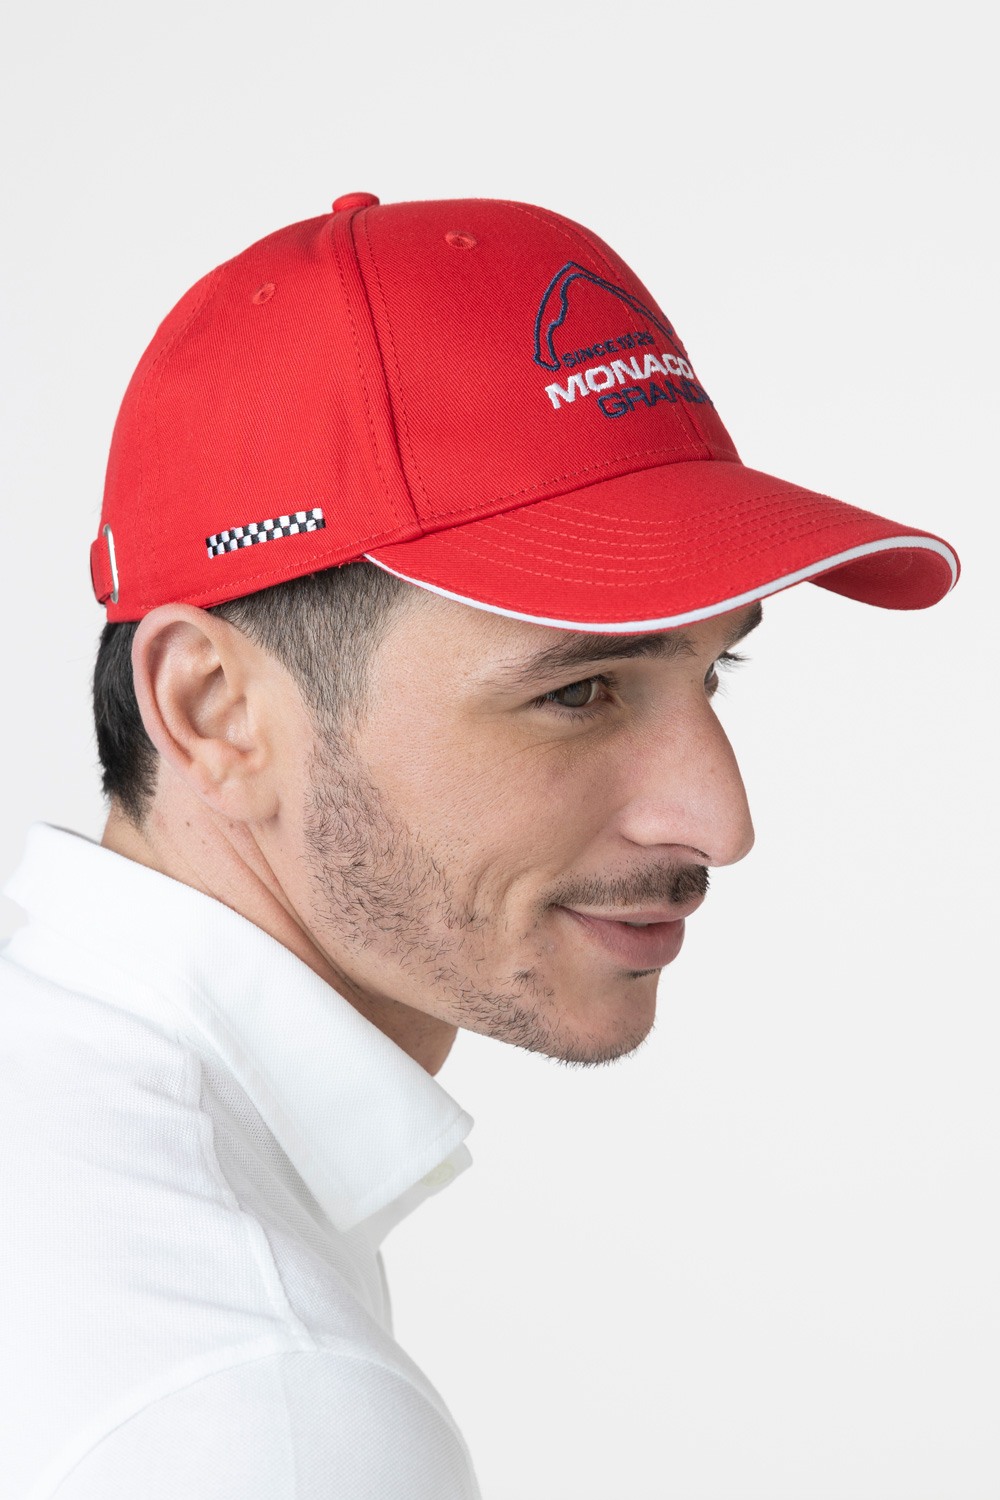 Casquette enfant rouge Formule 1 Grand-prix de Monaco